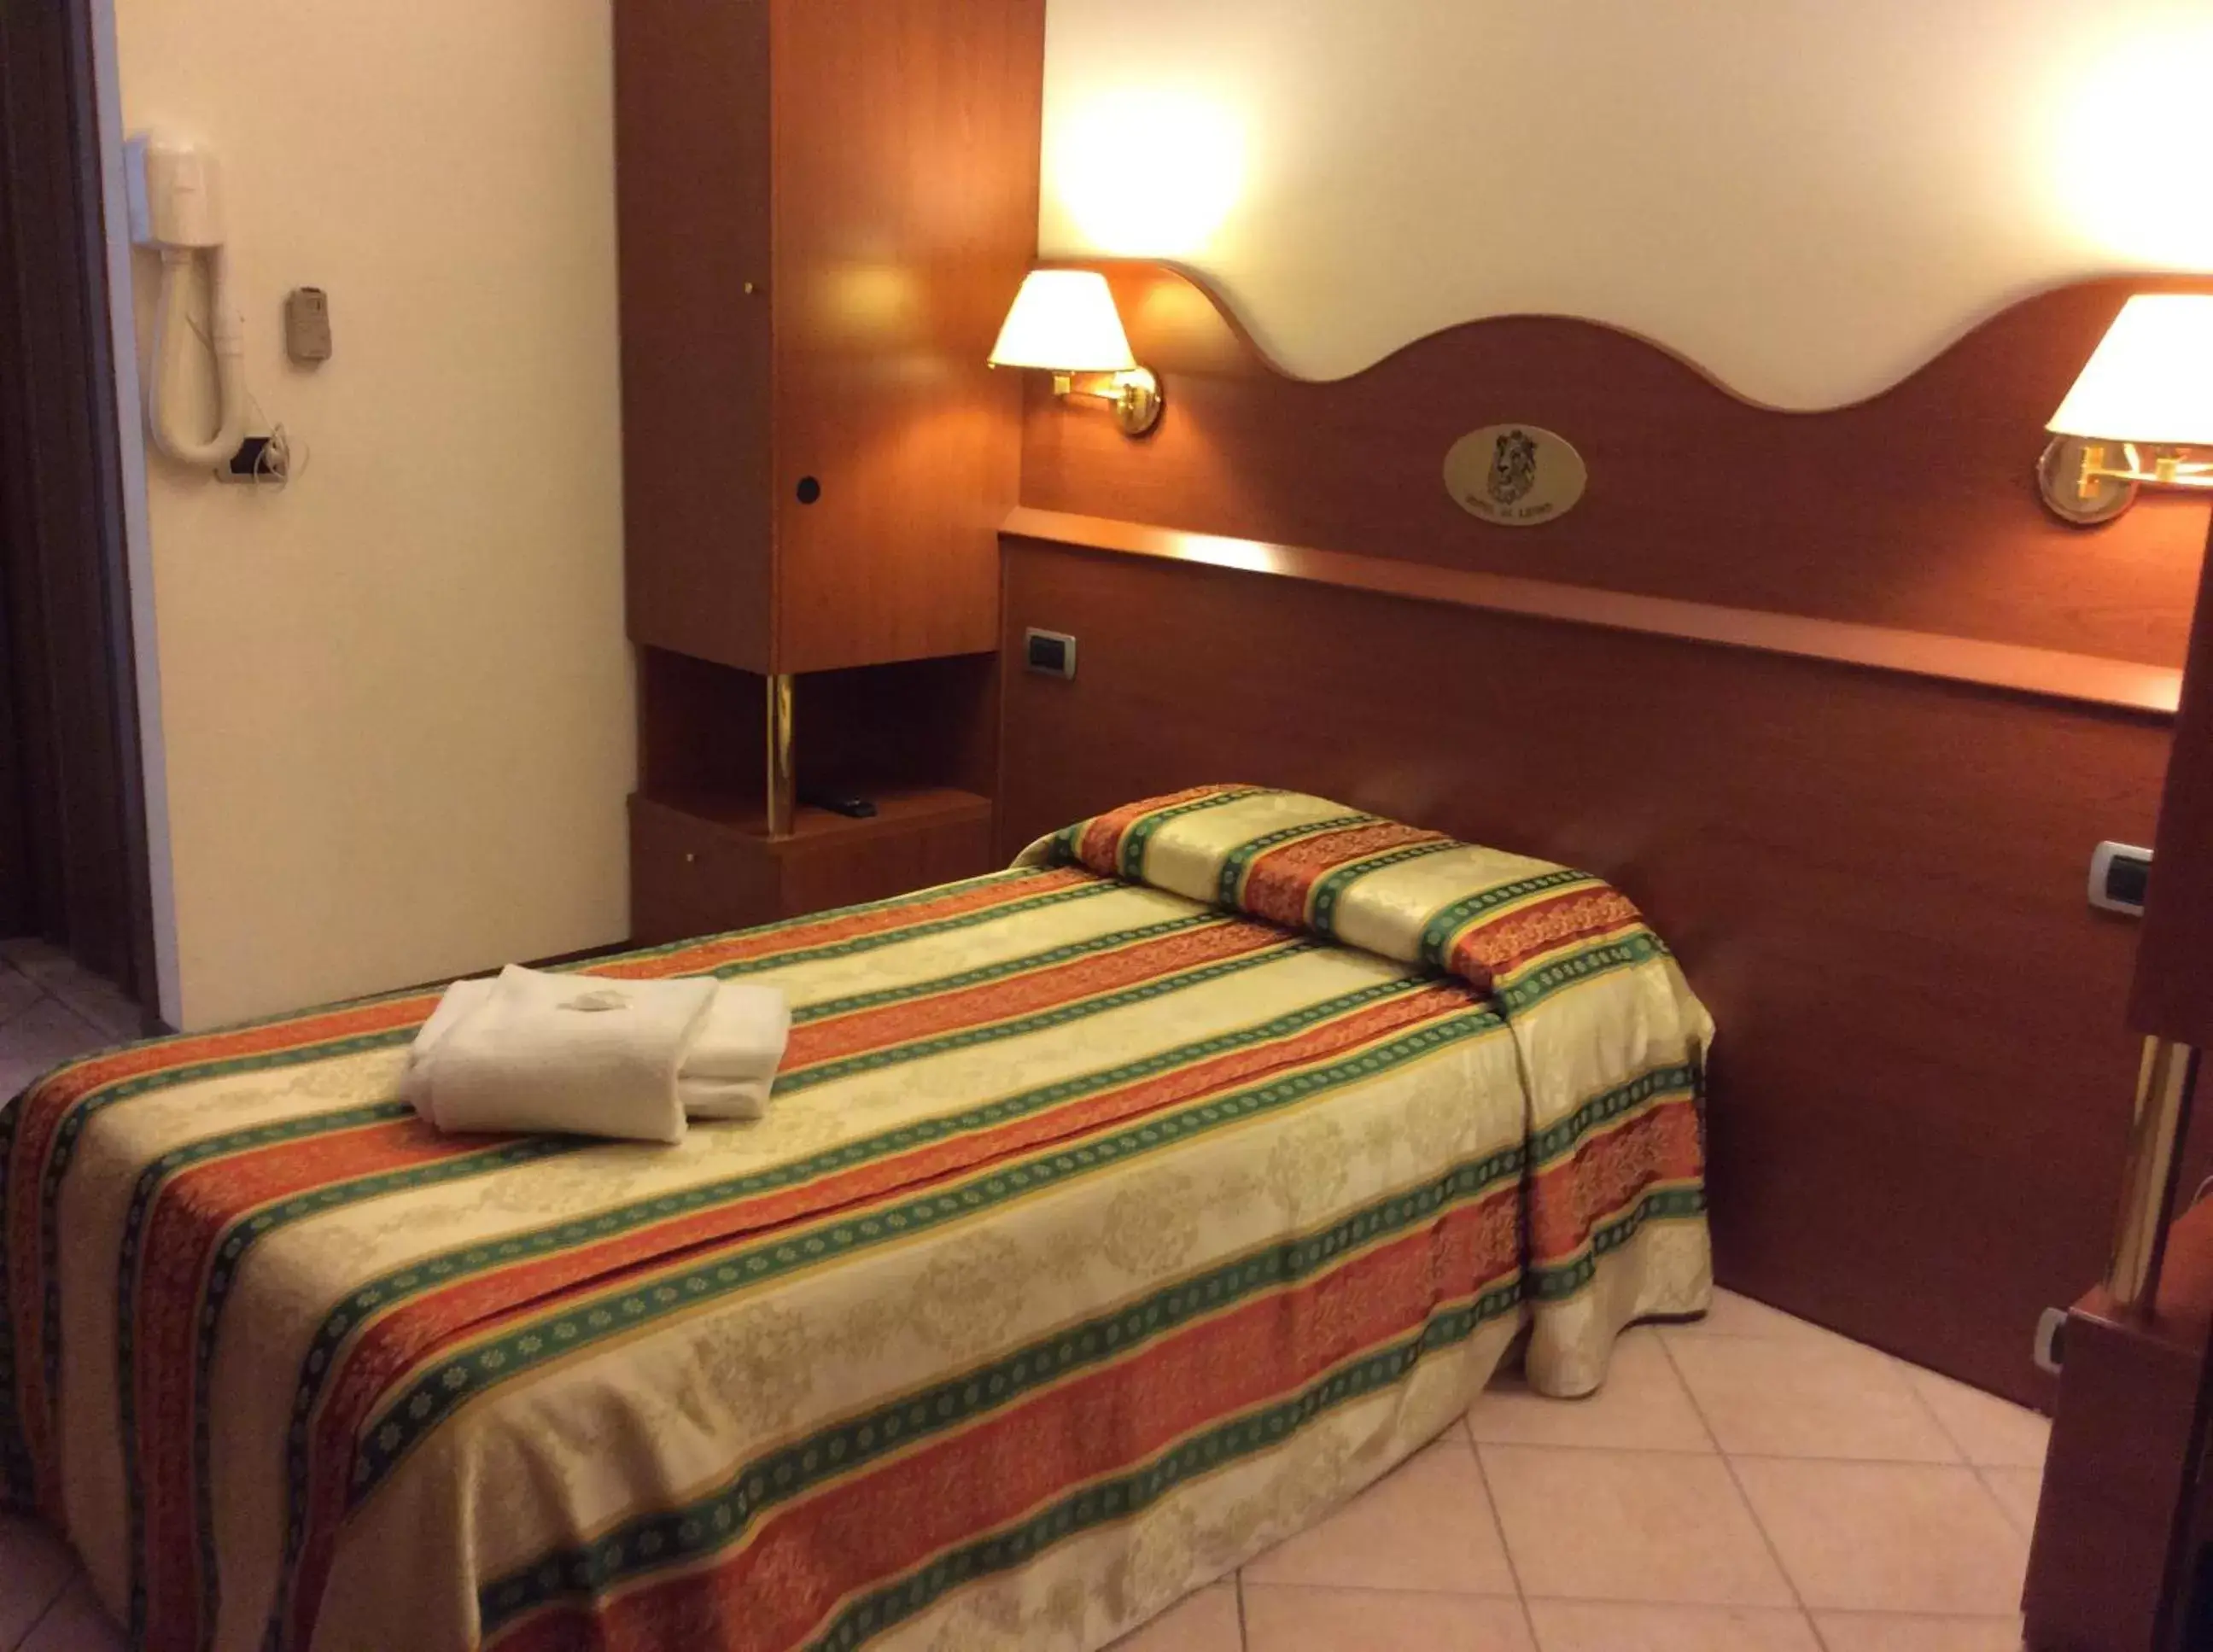 Bedroom, Room Photo in Hotel Pizzeria Ristorante "Al Leone"